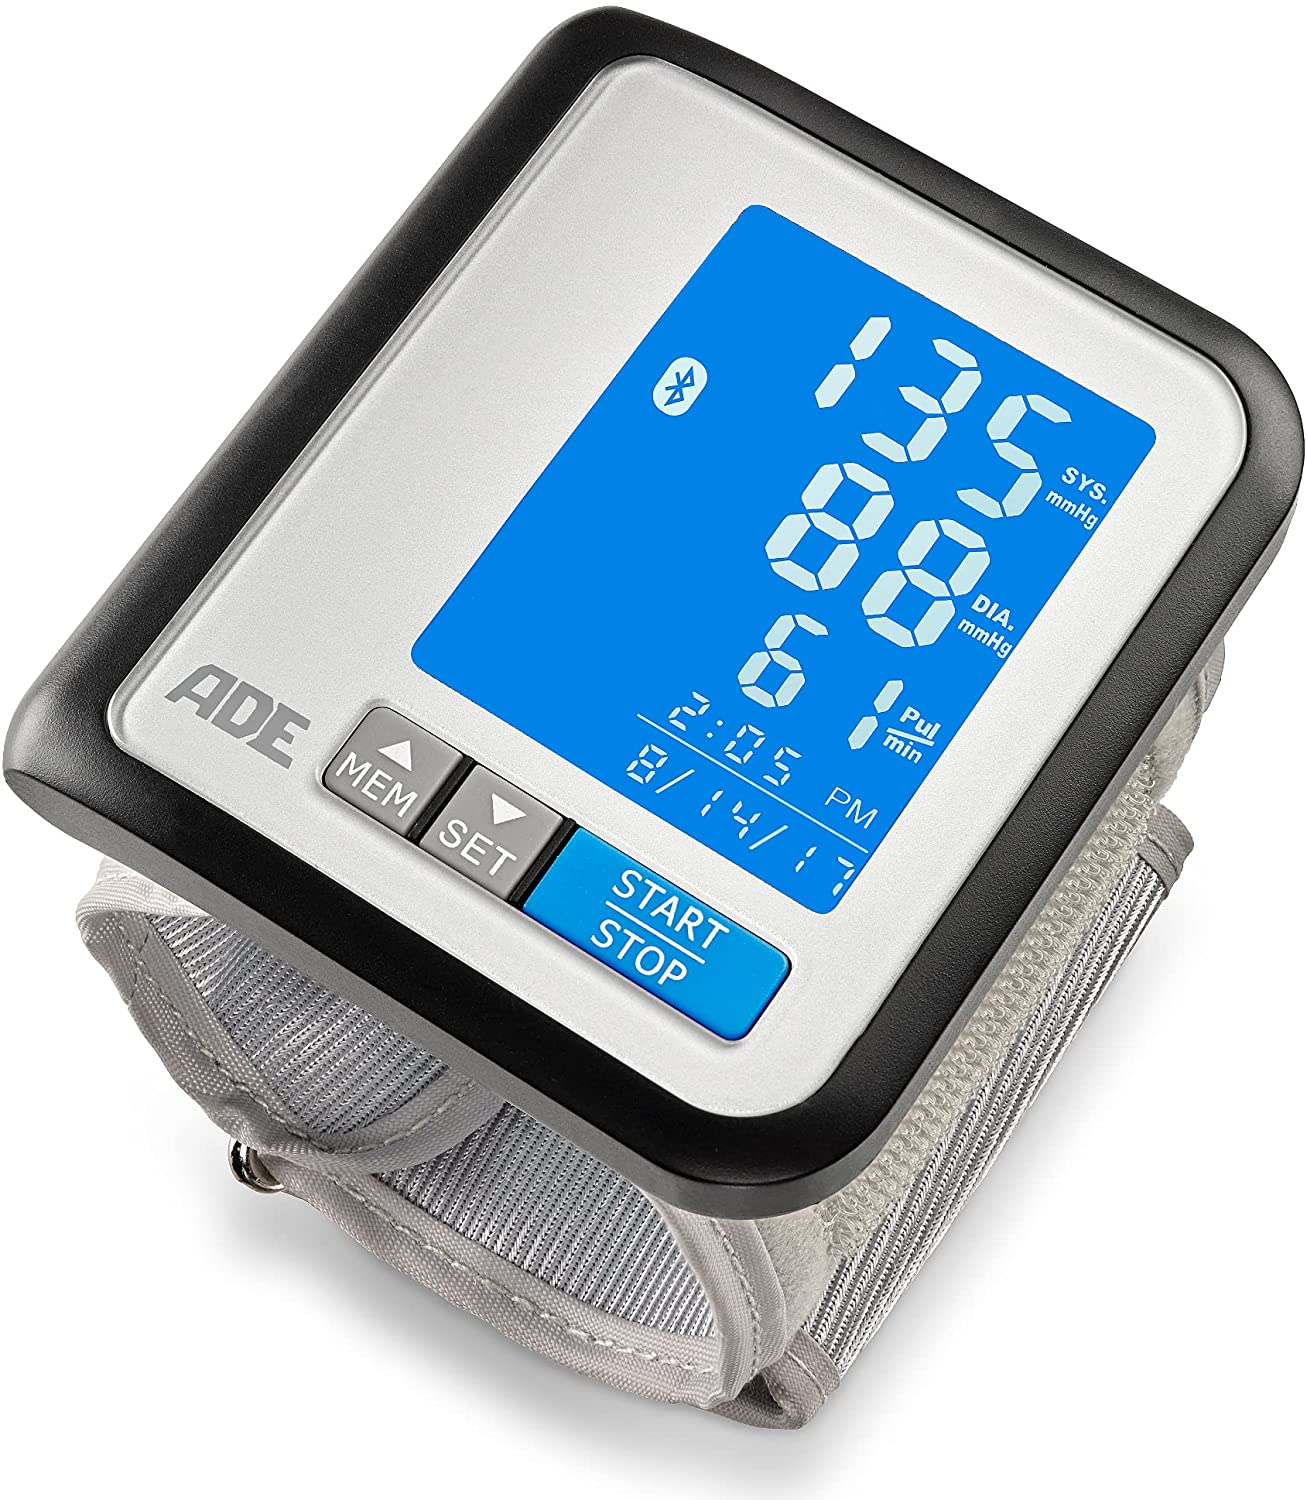 Blutdruckmessgerät Handgelenk BPM1600 FITvigo besonders flach, beleuchtetes Display mit exzellenter Ablesbarkeit, große Anzeige geeignet für Senioren (Blutdruck/ Puls messen, Arrhythmie-Warnung)